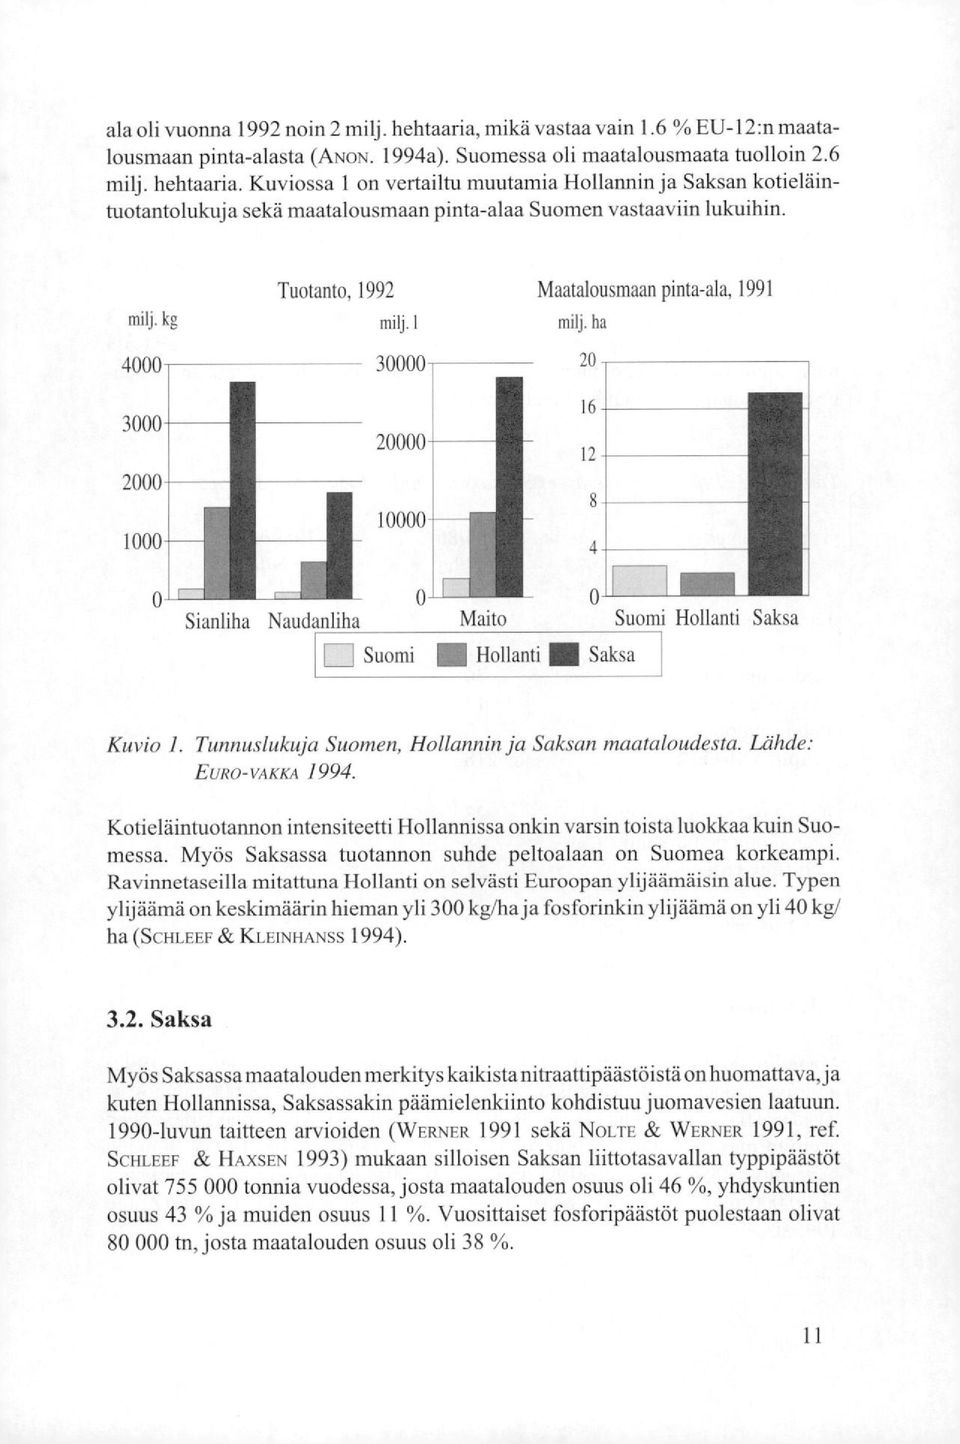 Saksa Kuvio 1. Tunnuslukuja Suomen, Hollannin ja Saksan maataloudesta. Lähde: EURO-VAKKA 1994. Kotieläintuotannon intensiteetti Hollannissa onkin varsin toista luokkaa kuin Suomessa.